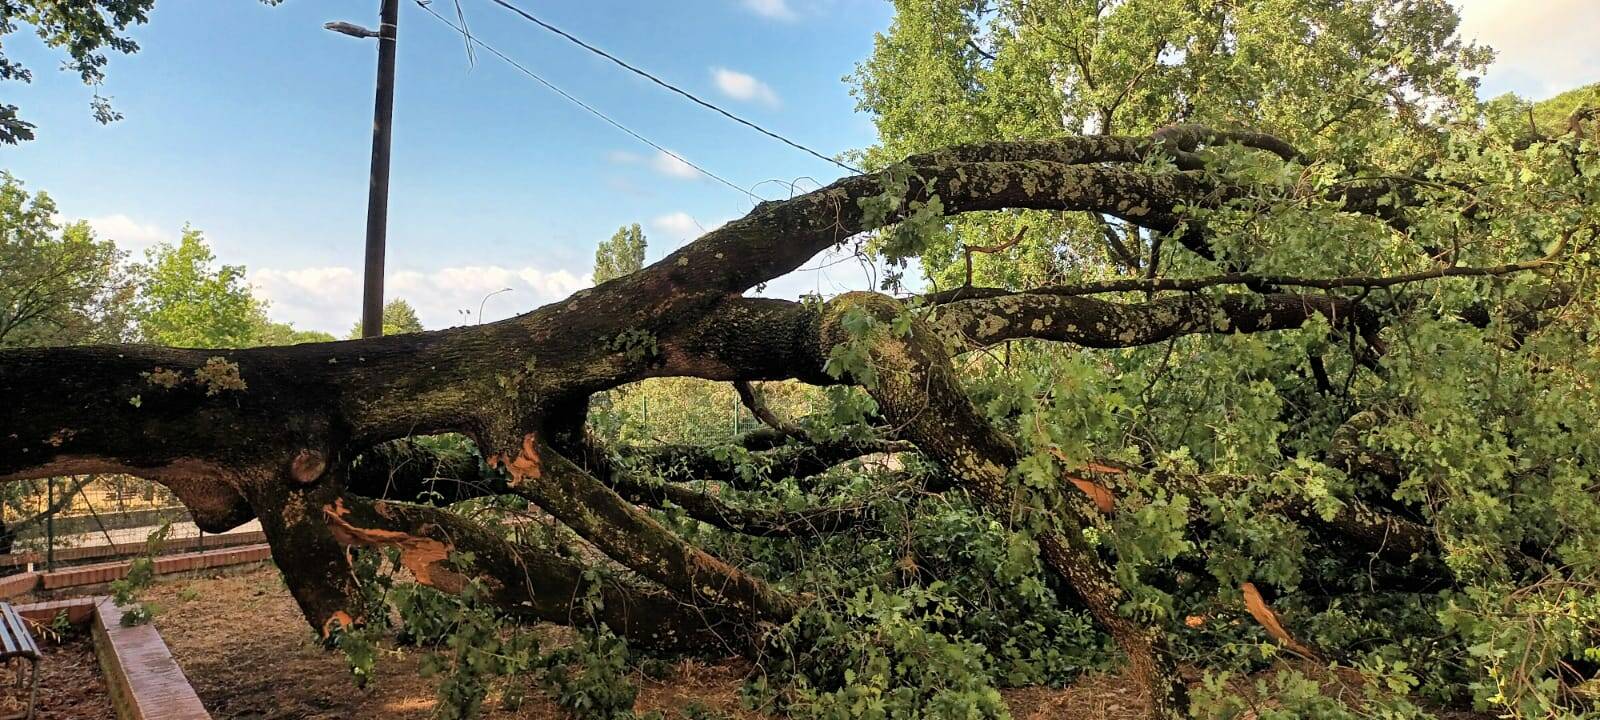 La quercia che si è abbattuta a Sarzana in prossimità della canonica tranciando i cavi elettici